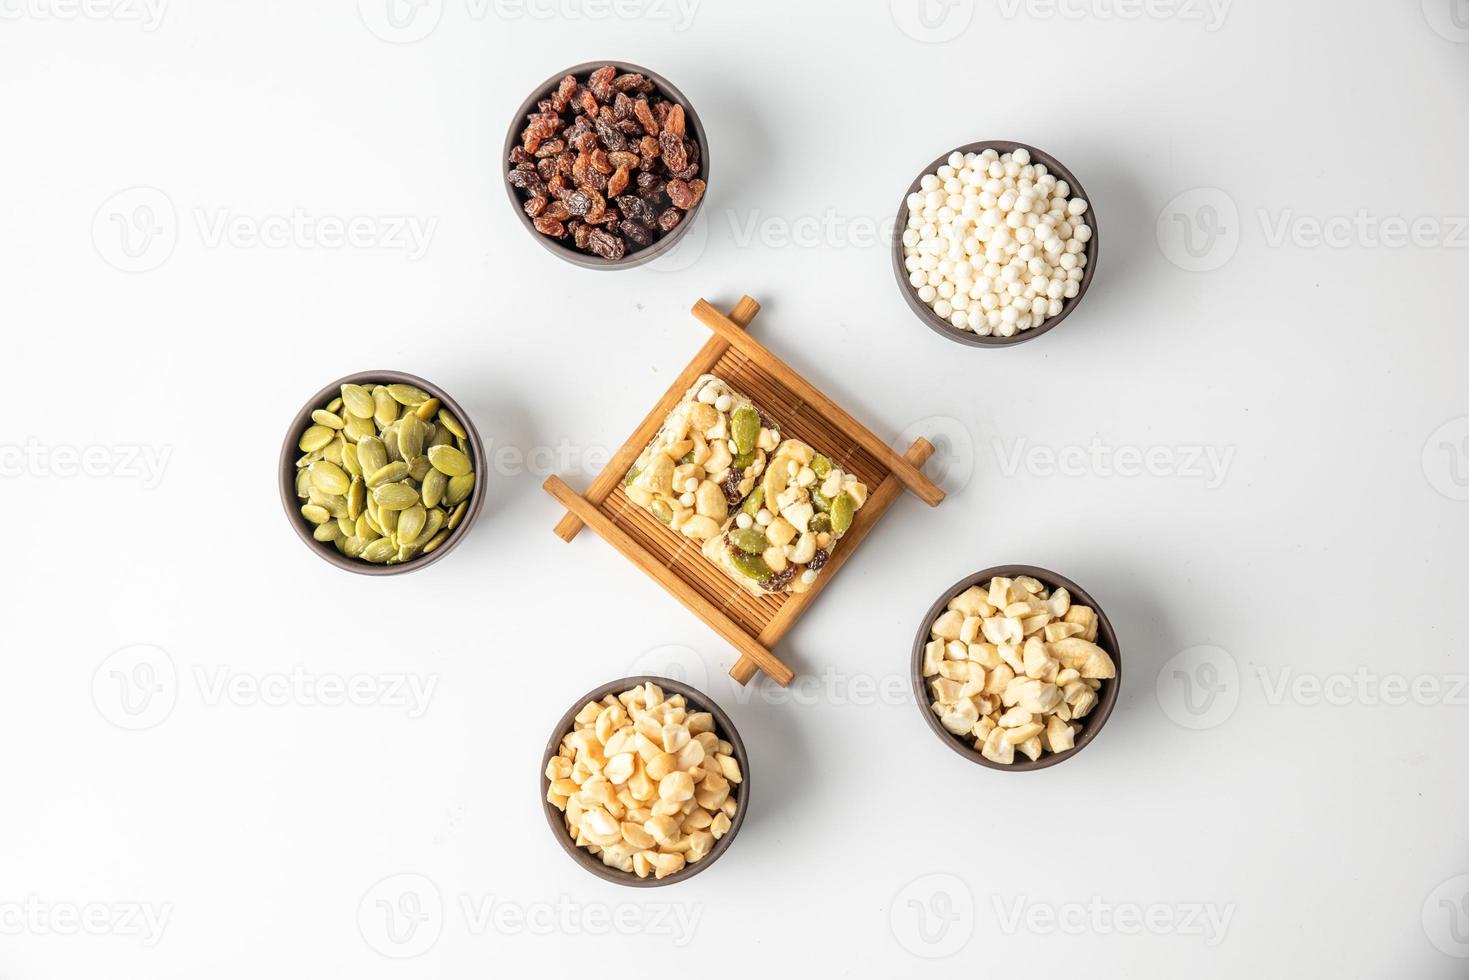 les arachides, les graines de melon, les raisins secs, les noix de cajou et les noix sont de forme hexagonale sur fond blanc photo